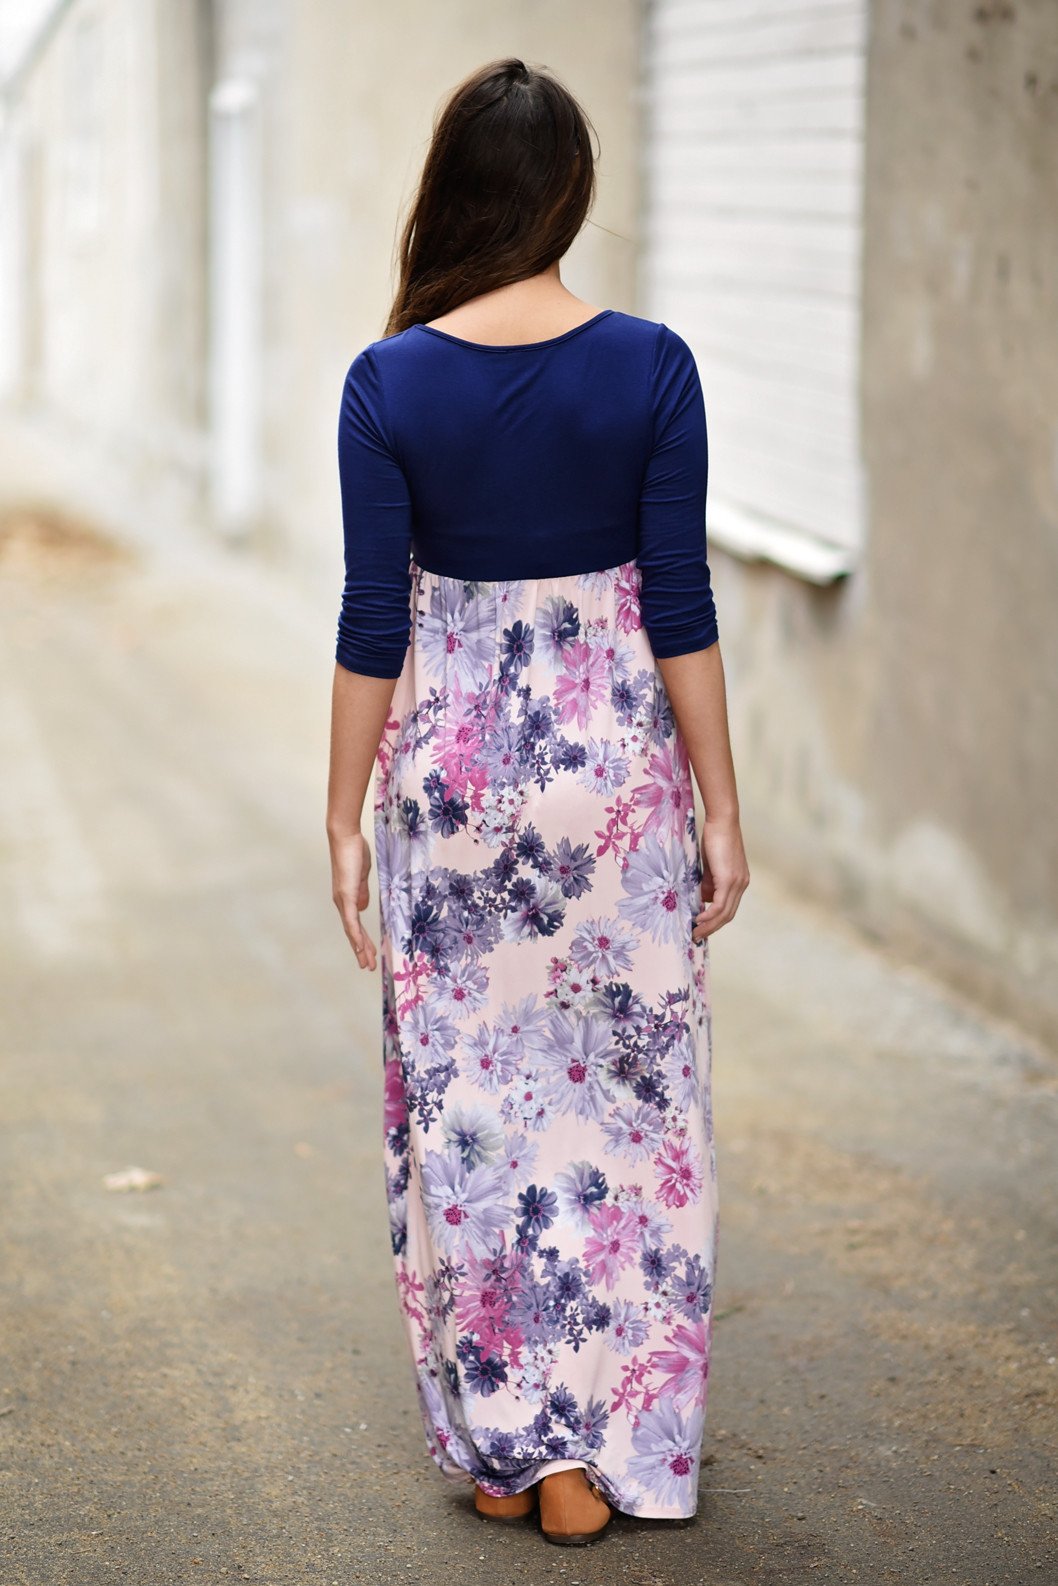 Purple & Floral 3/4 Sleeve Dress